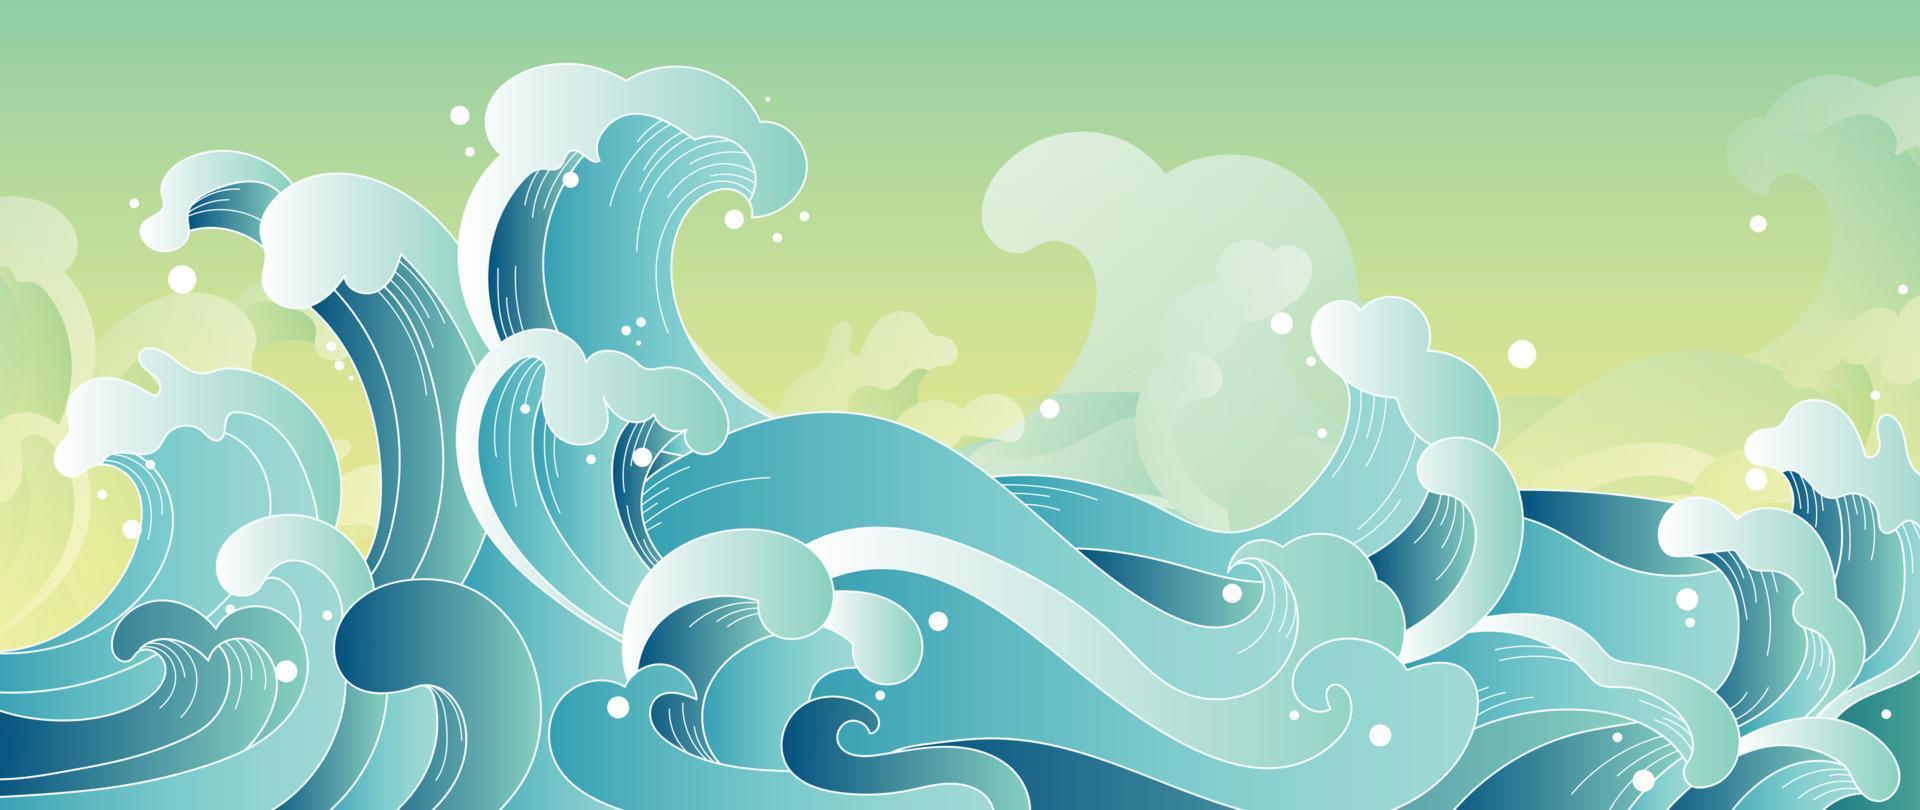 vector de patrón de onda japonés tradicional. Fondo de estilo de patrón abstracto de onda oceánica oriental dibujado a mano elegante. ilustración de diseño de arte para estampados, telas, afiches, decoración del hogar y papel tapiz.